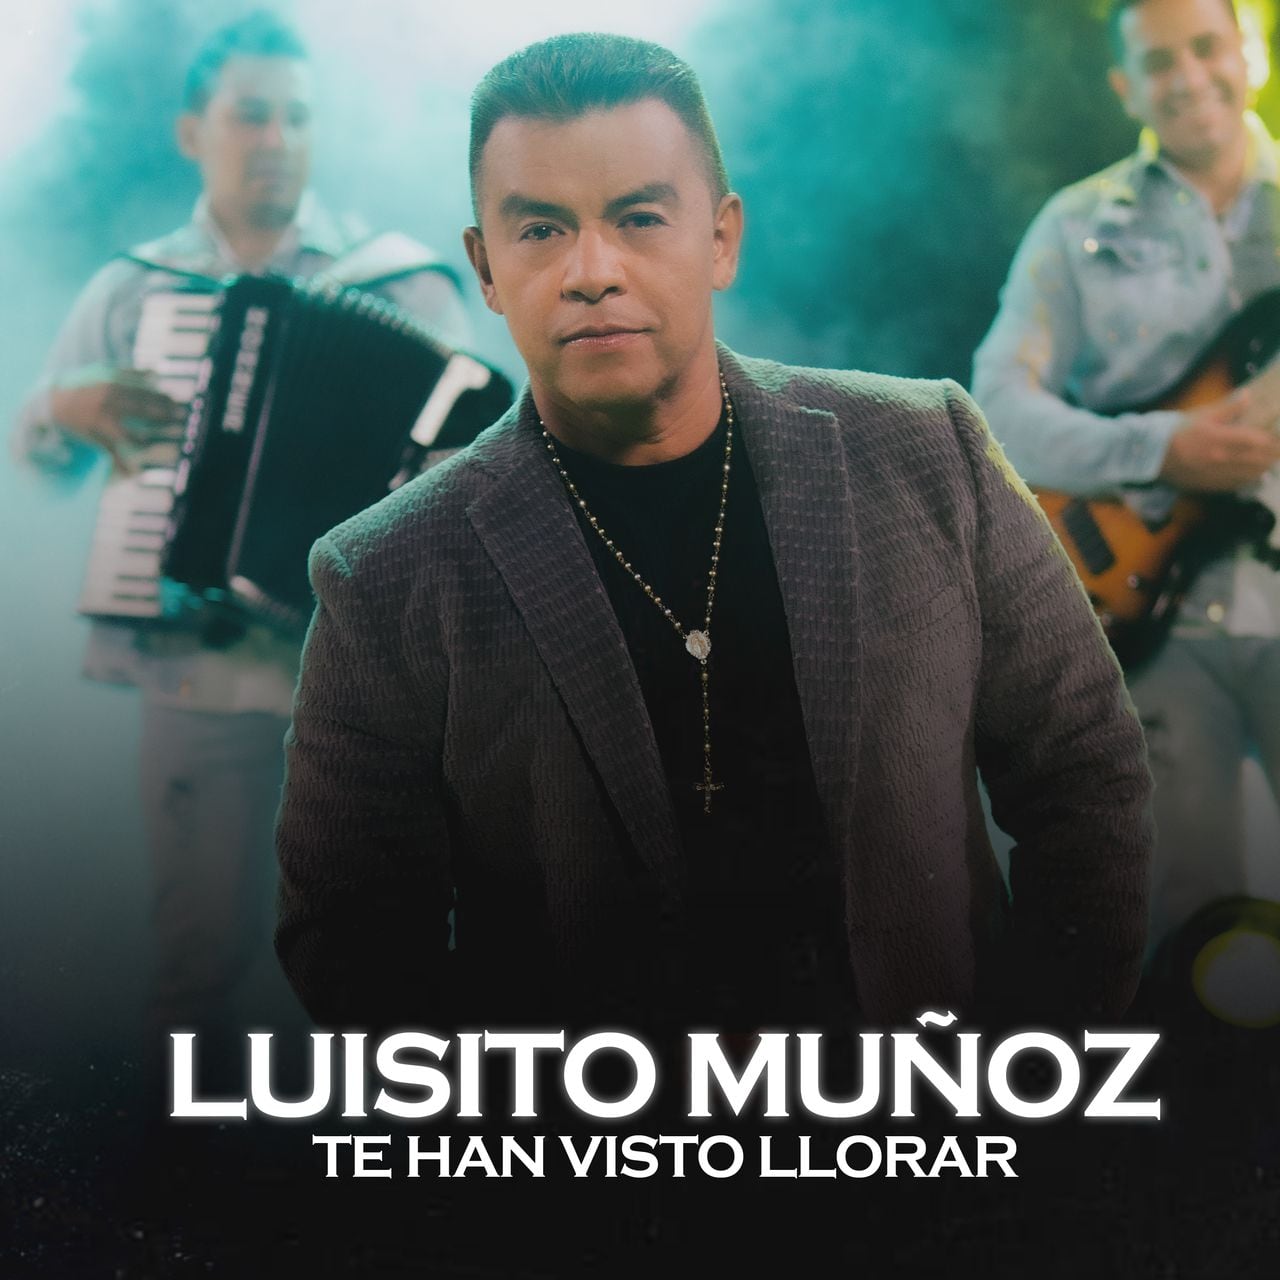 Luisito Muñoz está de lanzamiento musical.